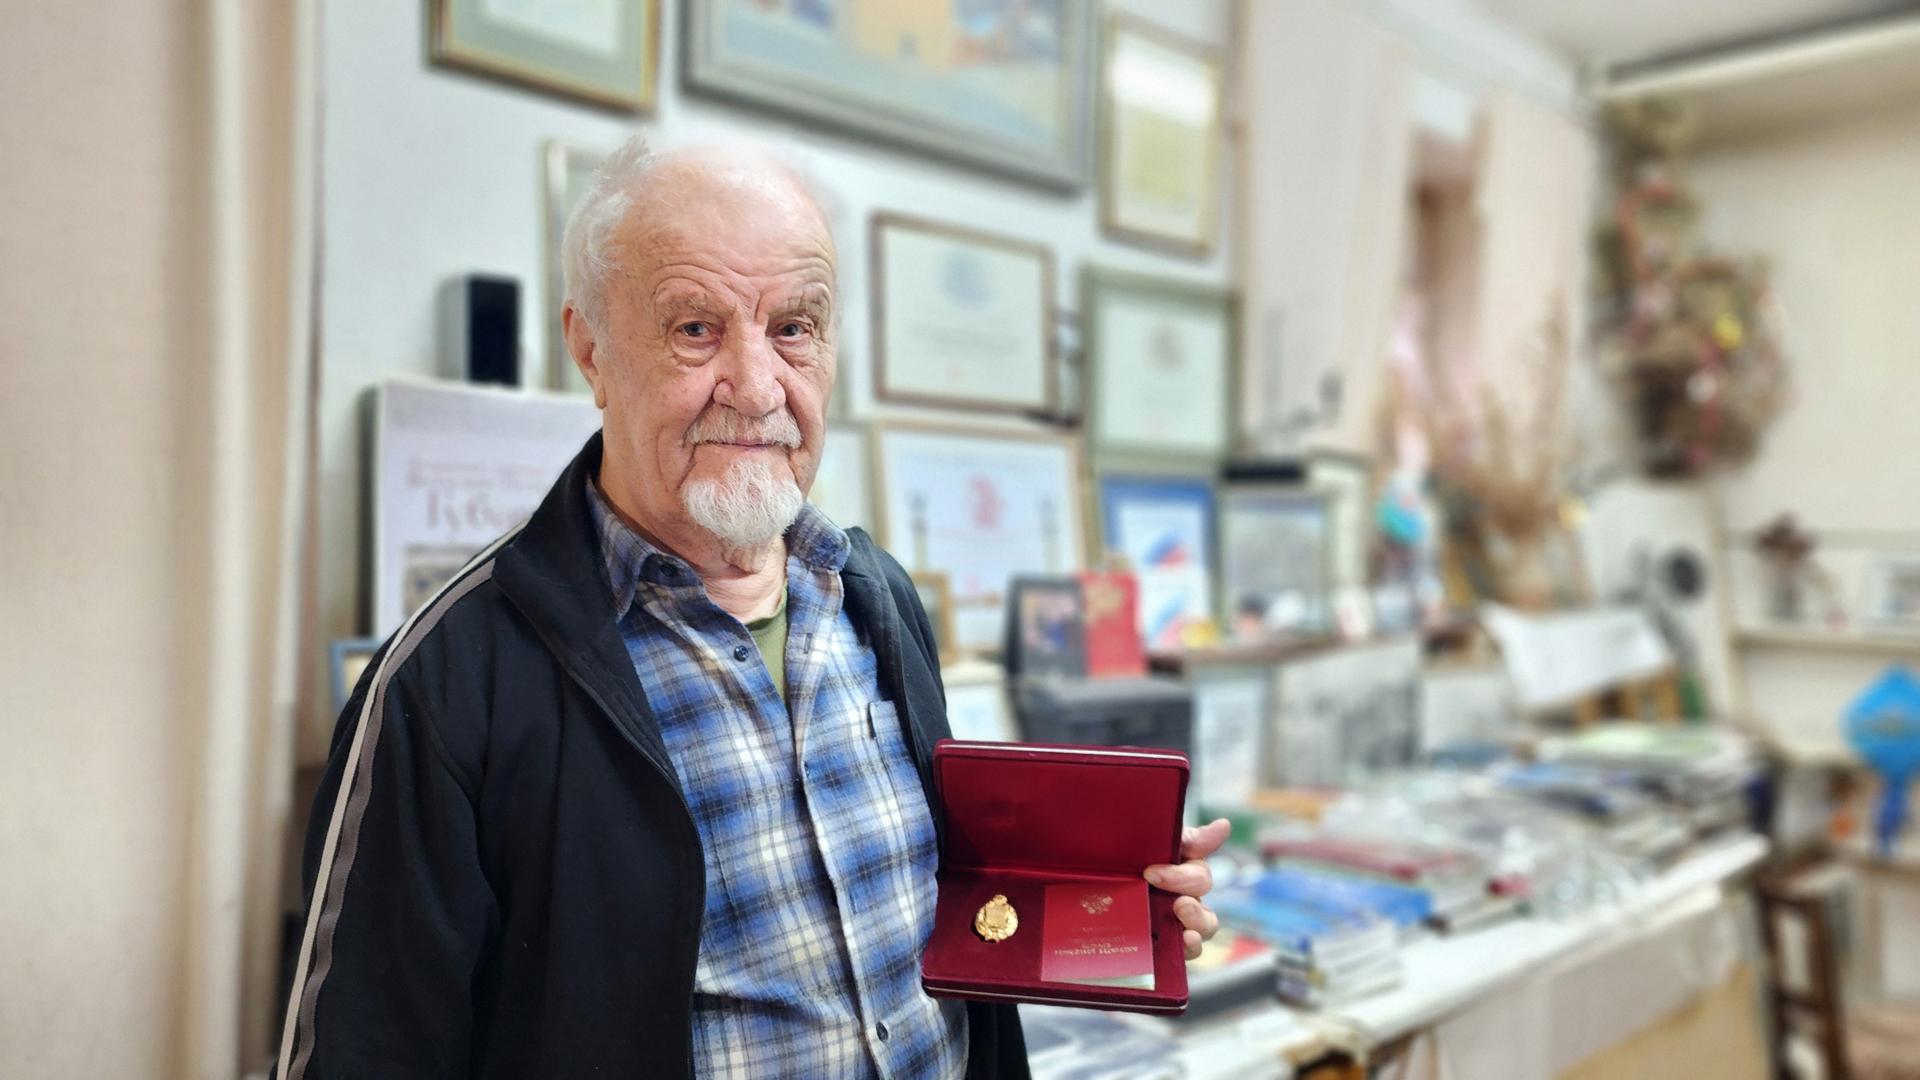 О творчестве и путешествиях в преддверии 87-летия: протвинский художник Виталий Губарев получил звание Народного